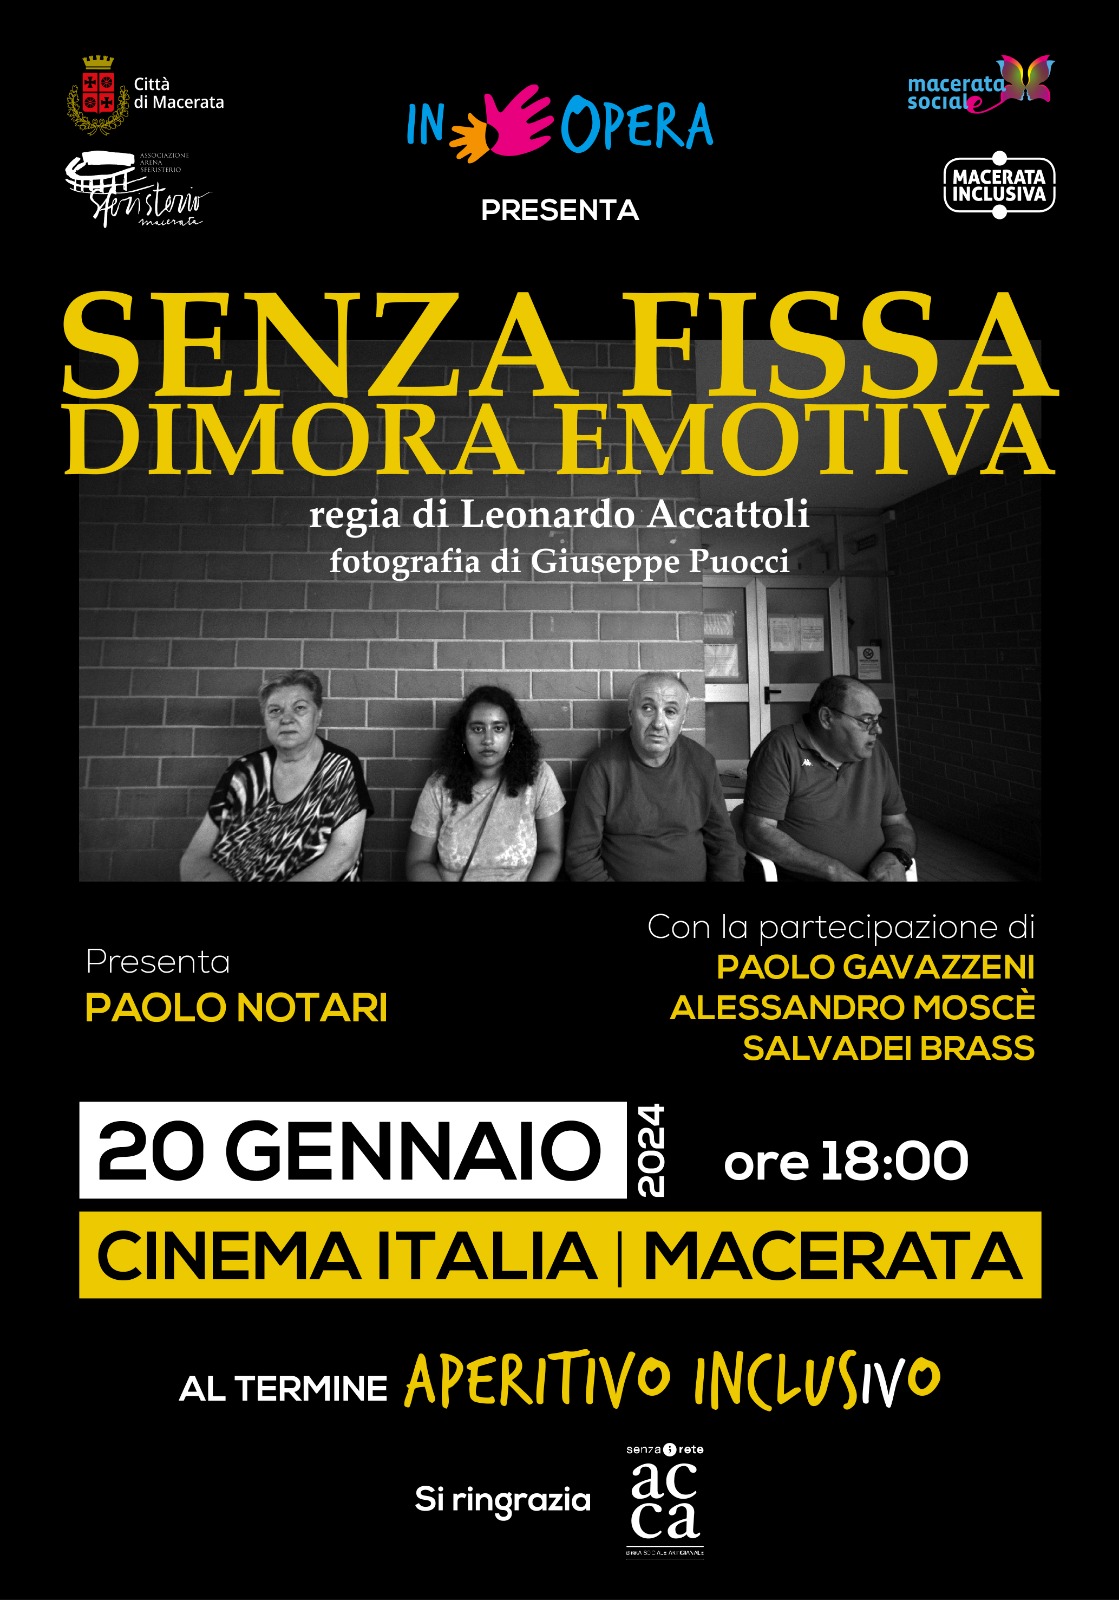  docu film In Opera macerata